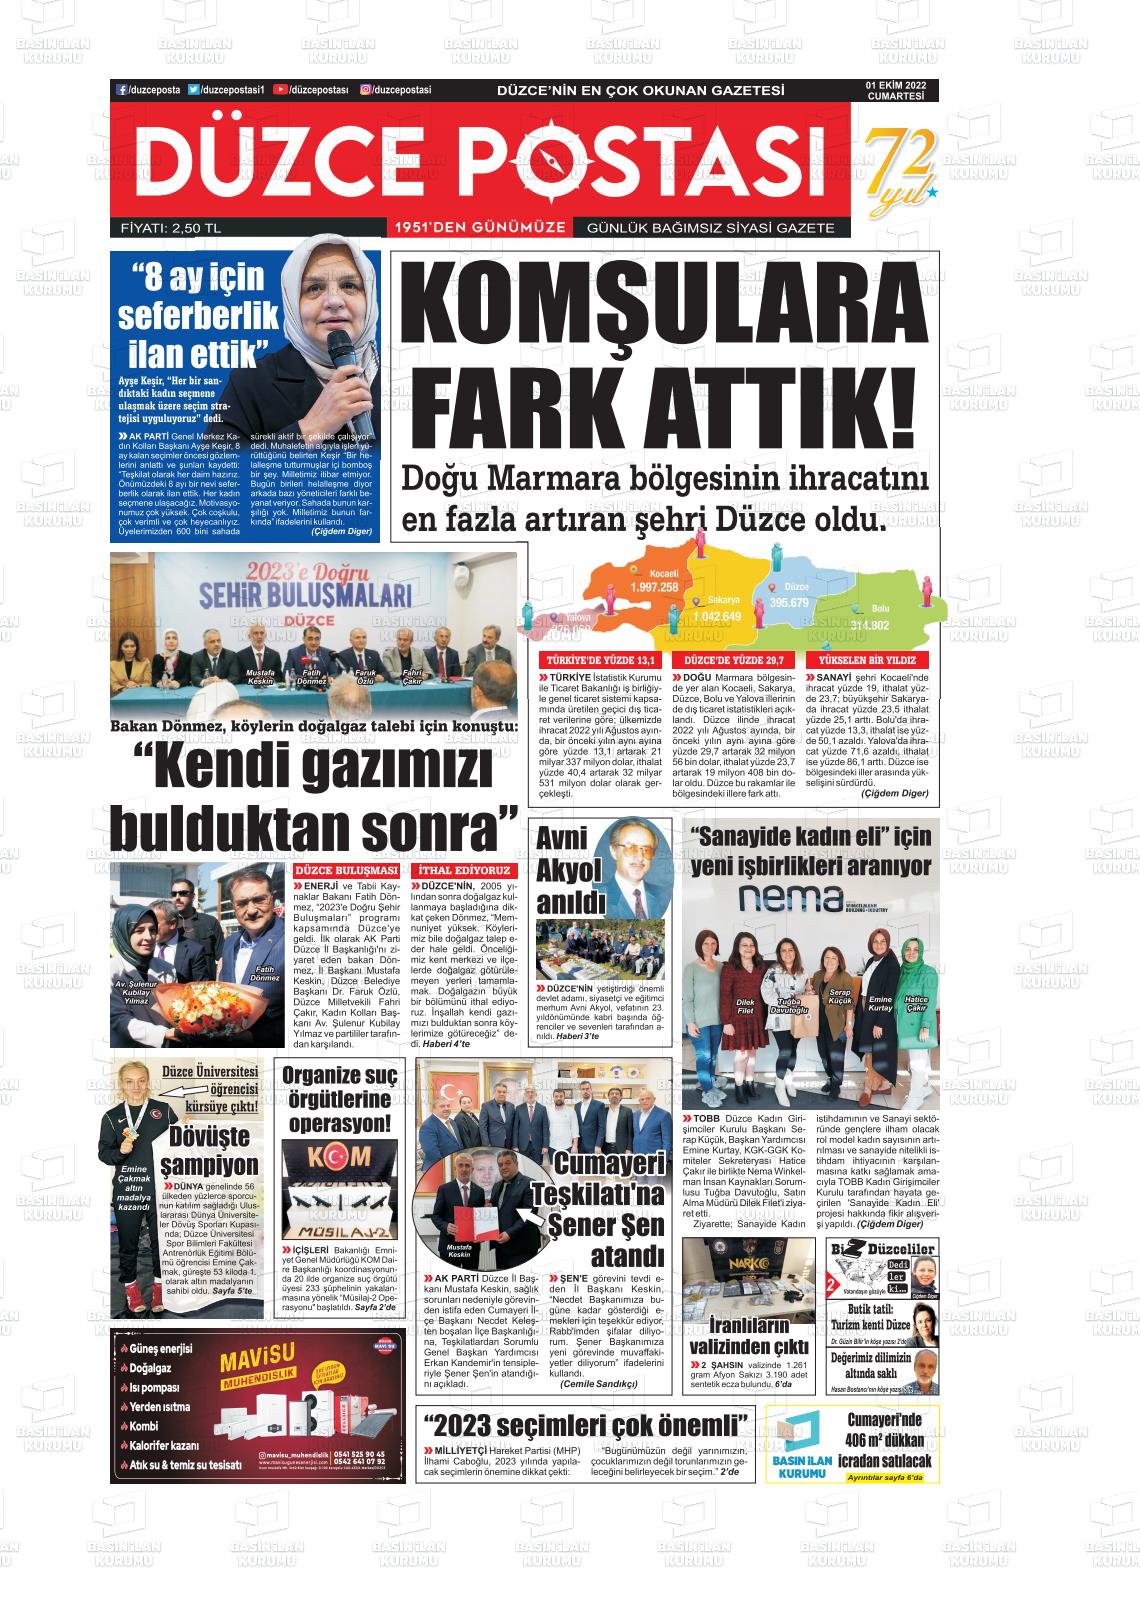 01 Ekim 2022 Düzce Postası Gazete Manşeti